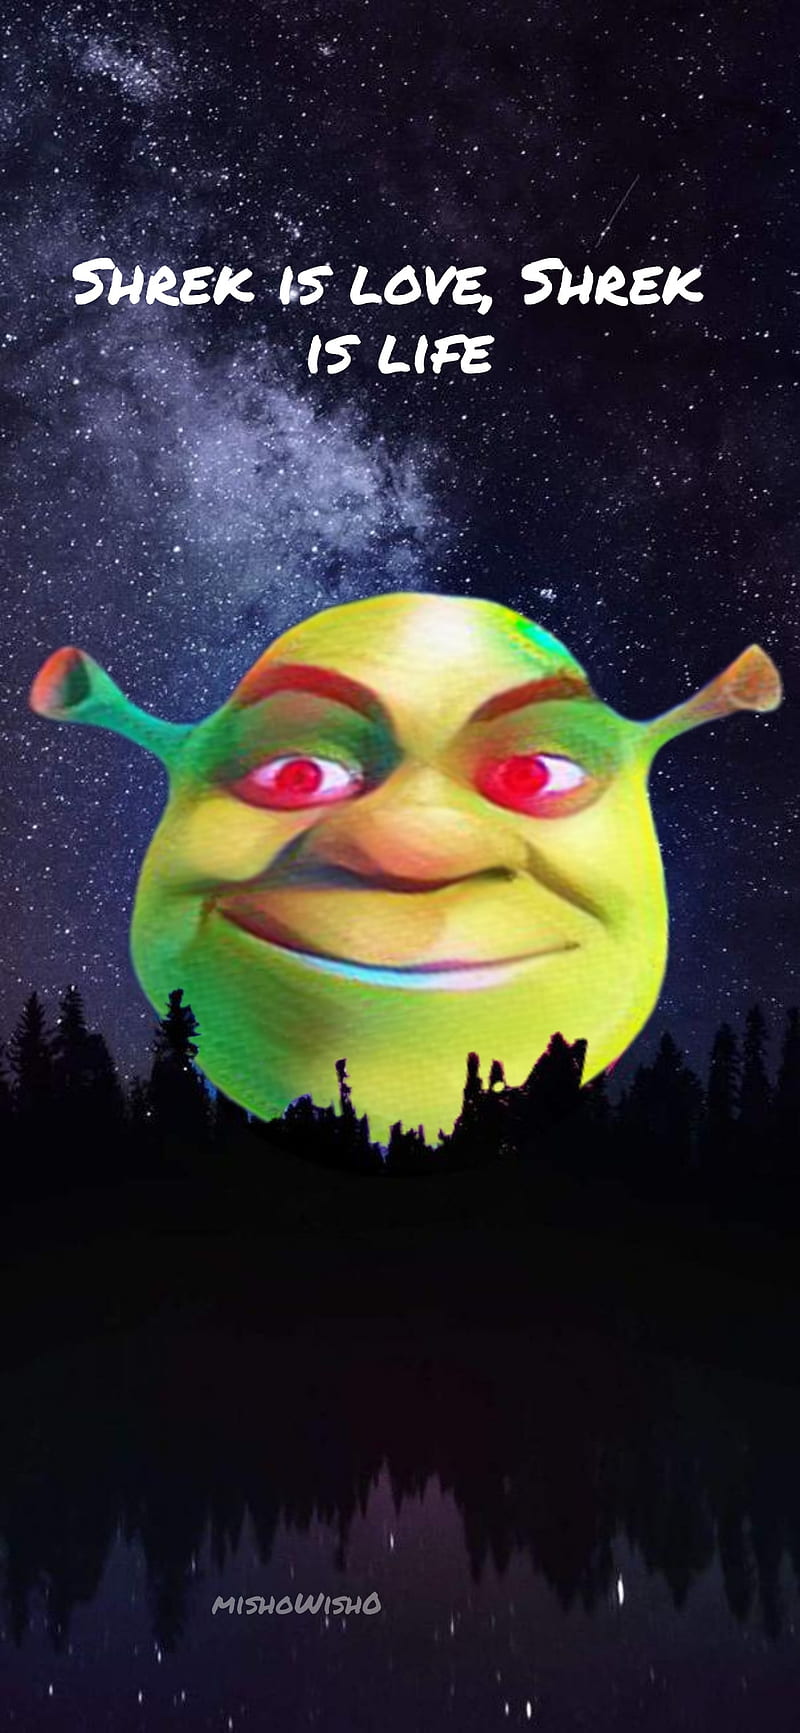 Shrek is love, life and laughter - Shrek